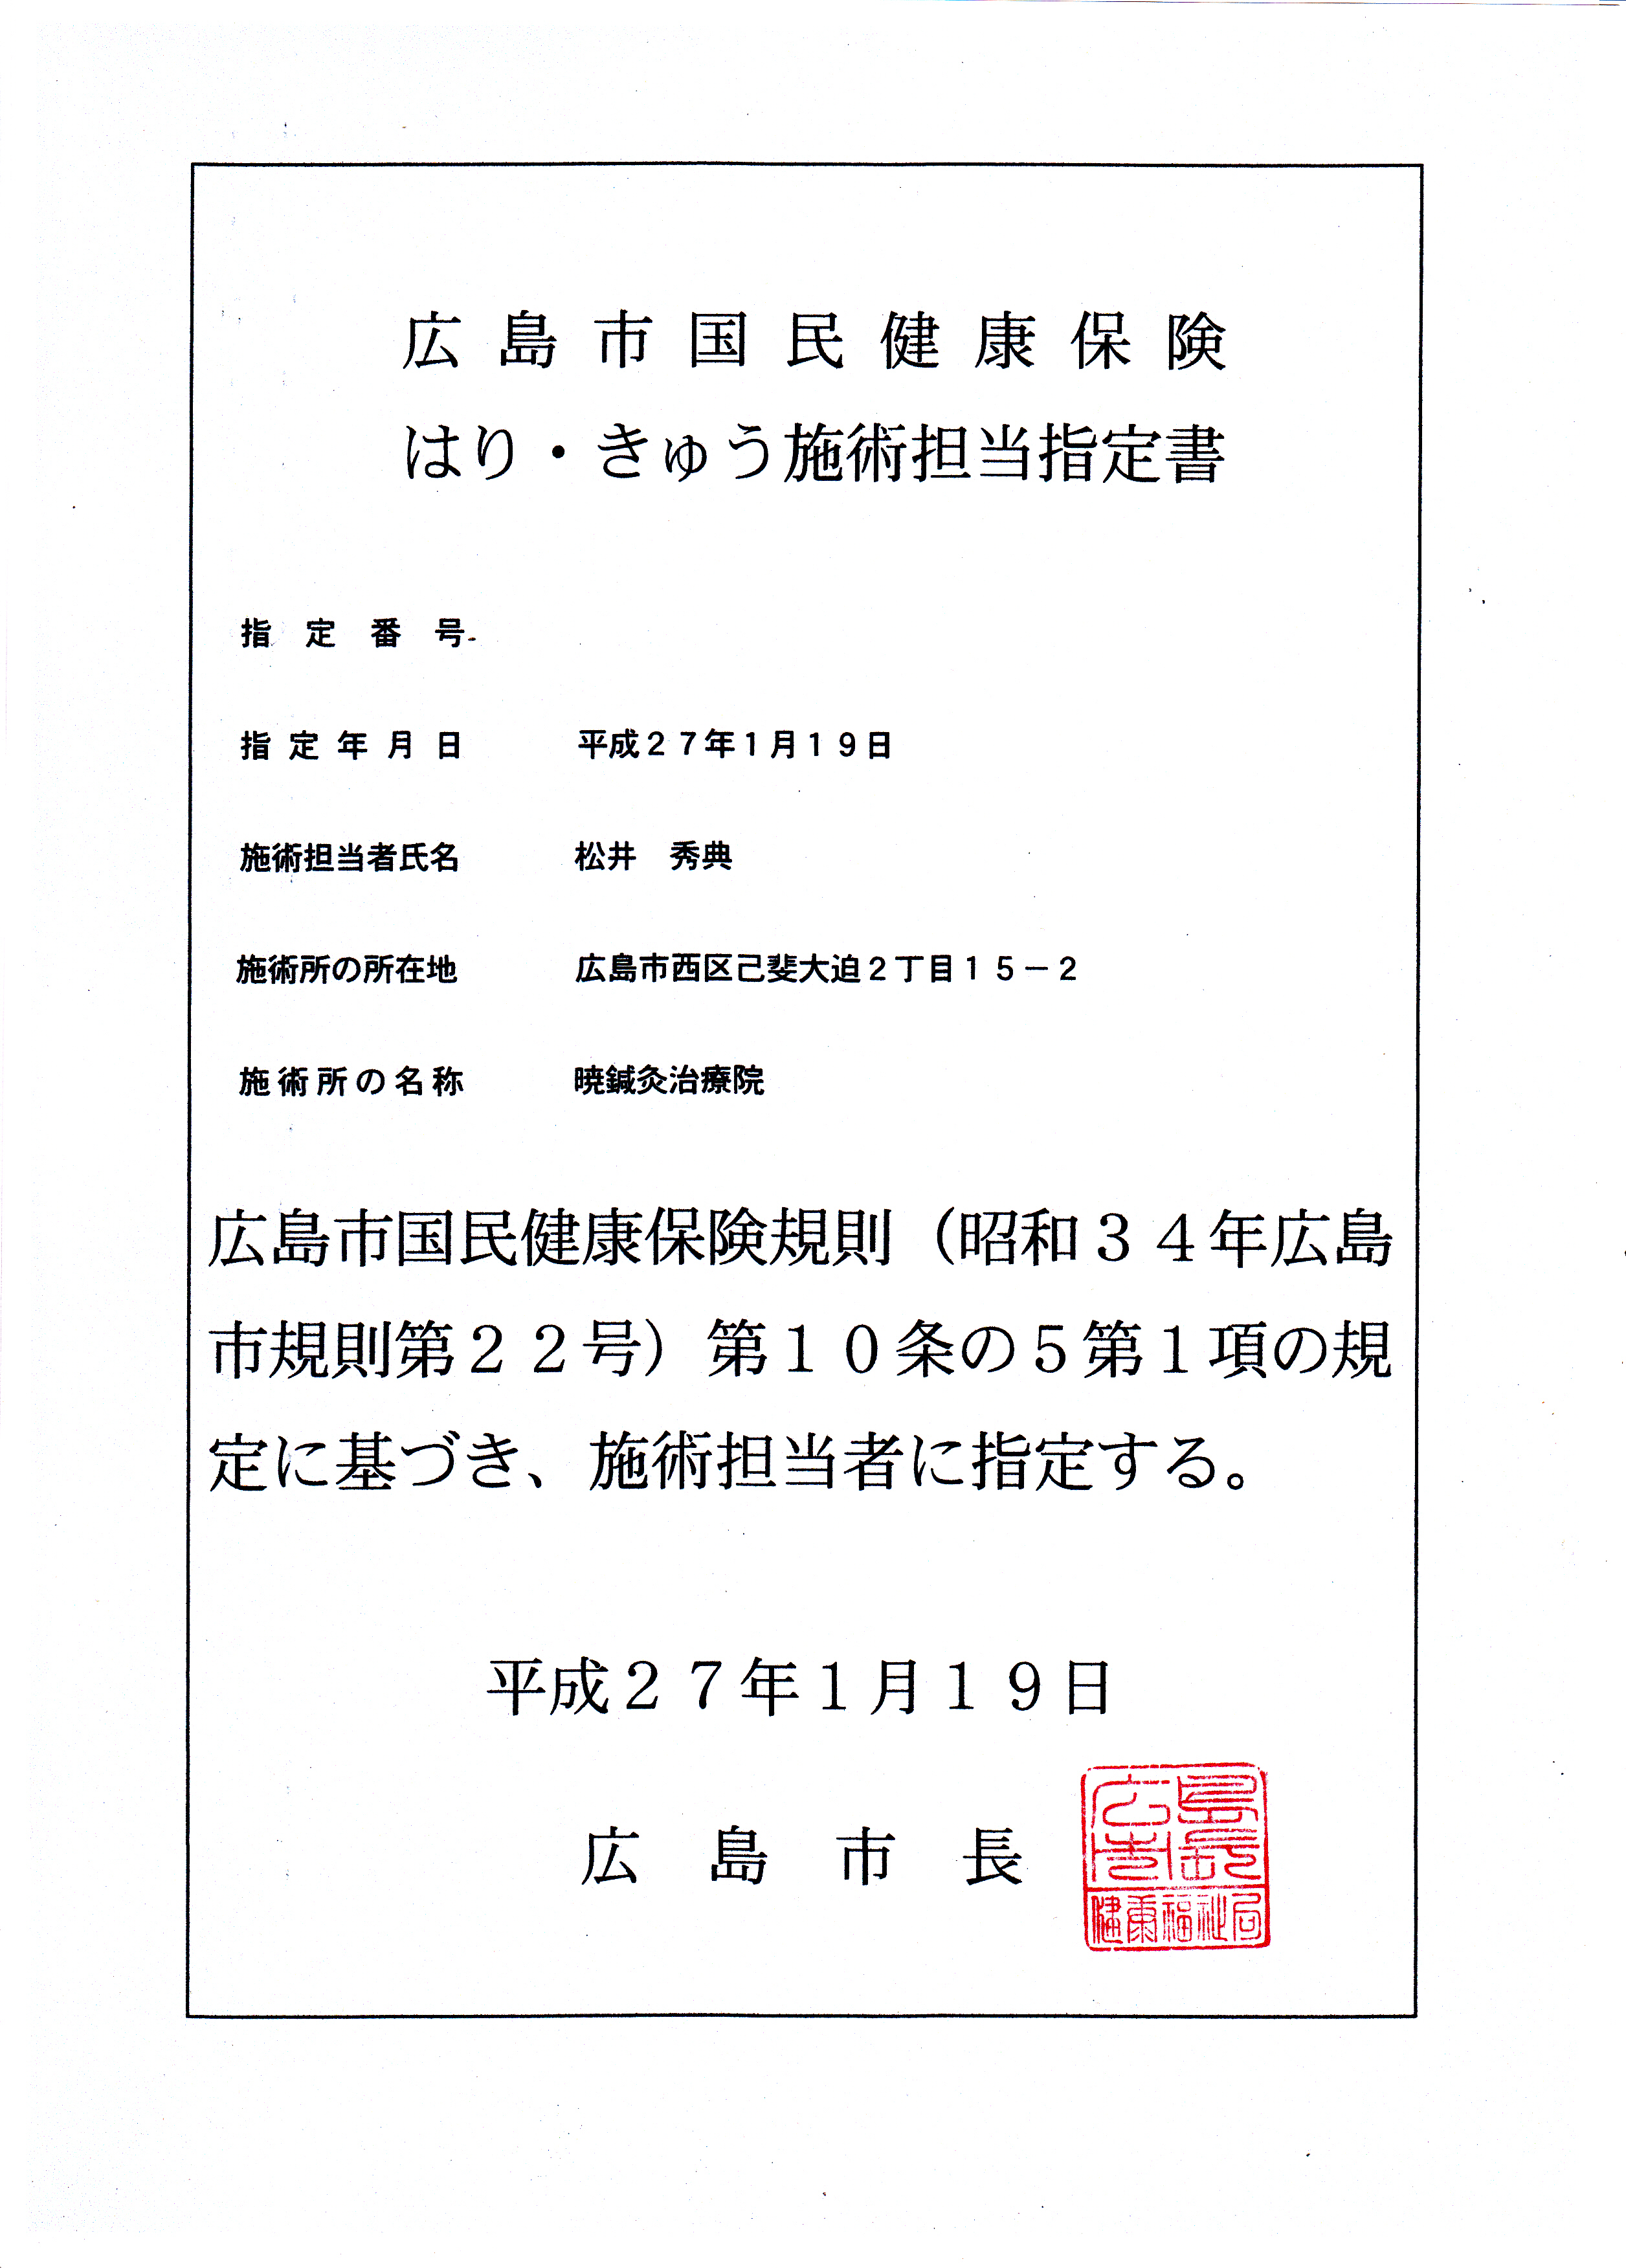 広島市国民健康保険はり・きゅう施術担当指定書です